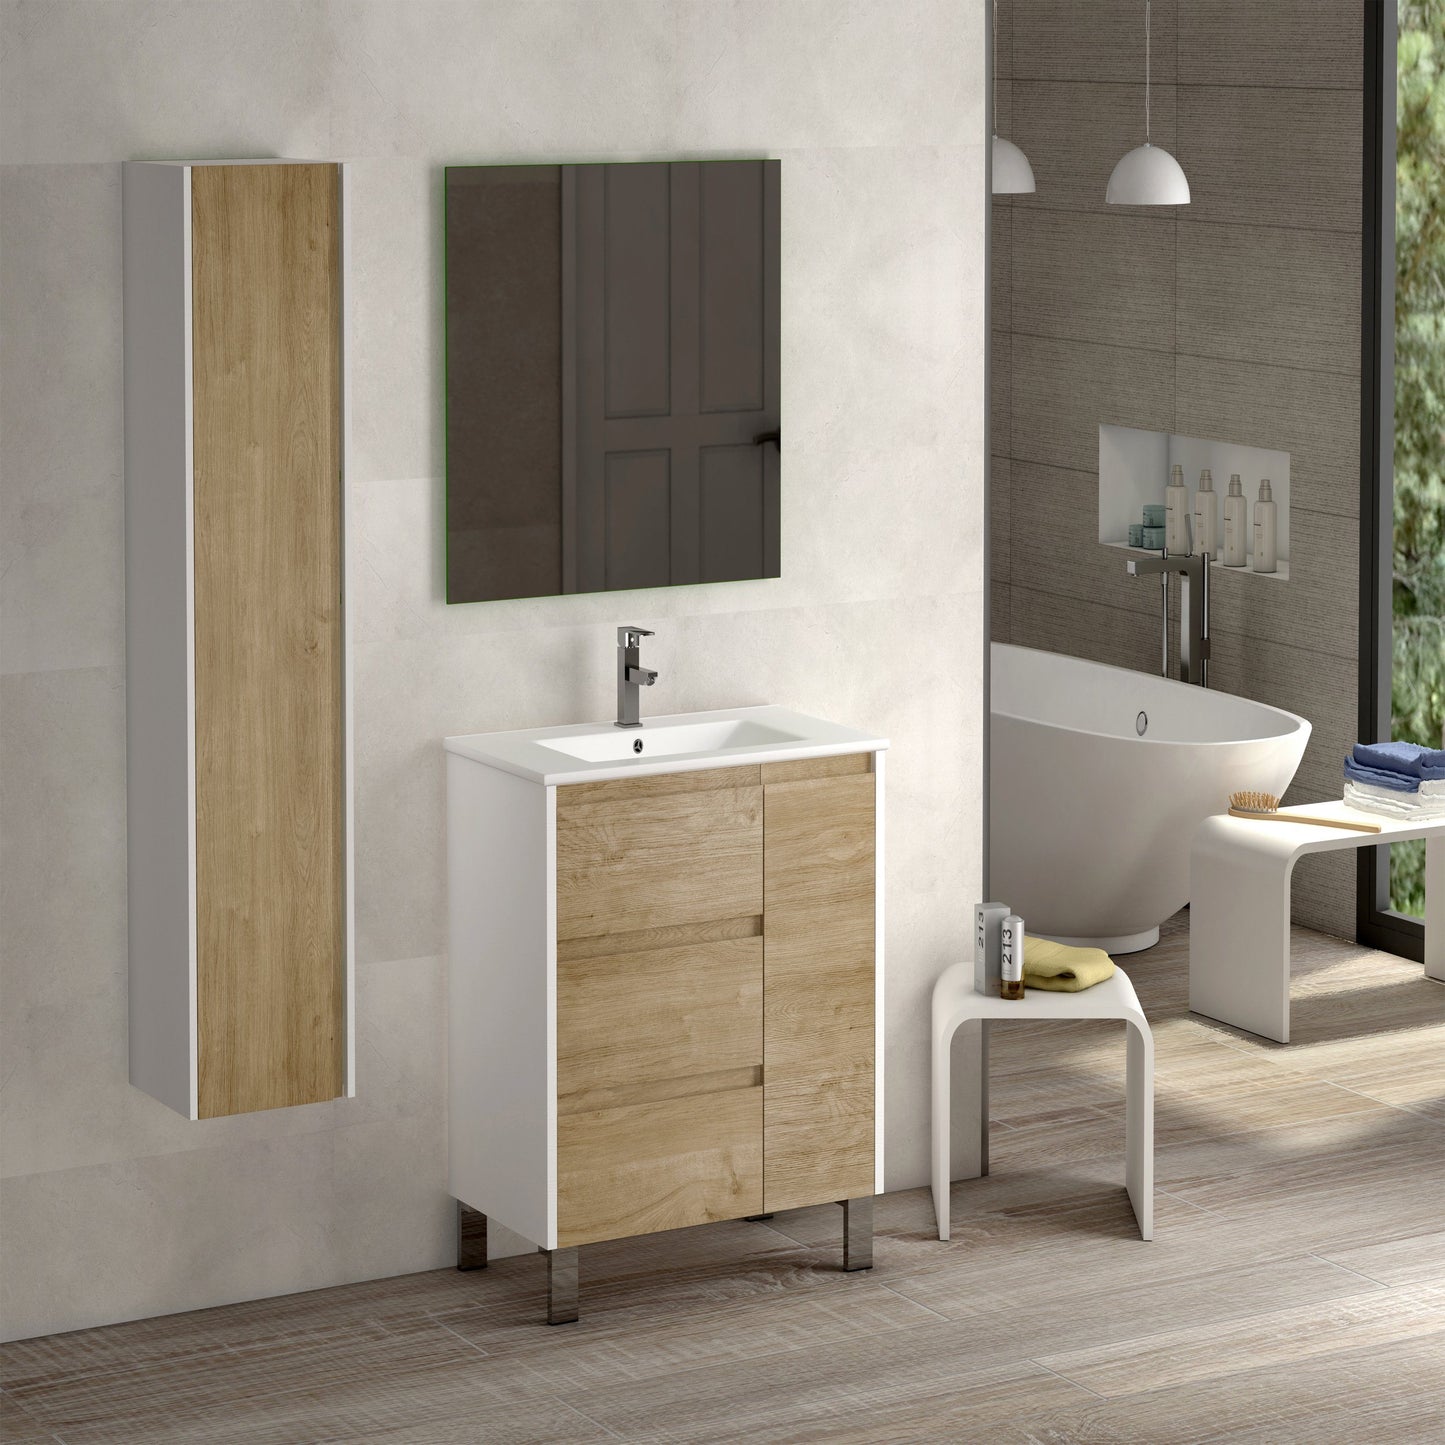 Eviva Bella 32” Vanity with Porcelain sink - Luxe Bathroom Vanities Luxury Bathroom Fixtures Bathroom Furniture